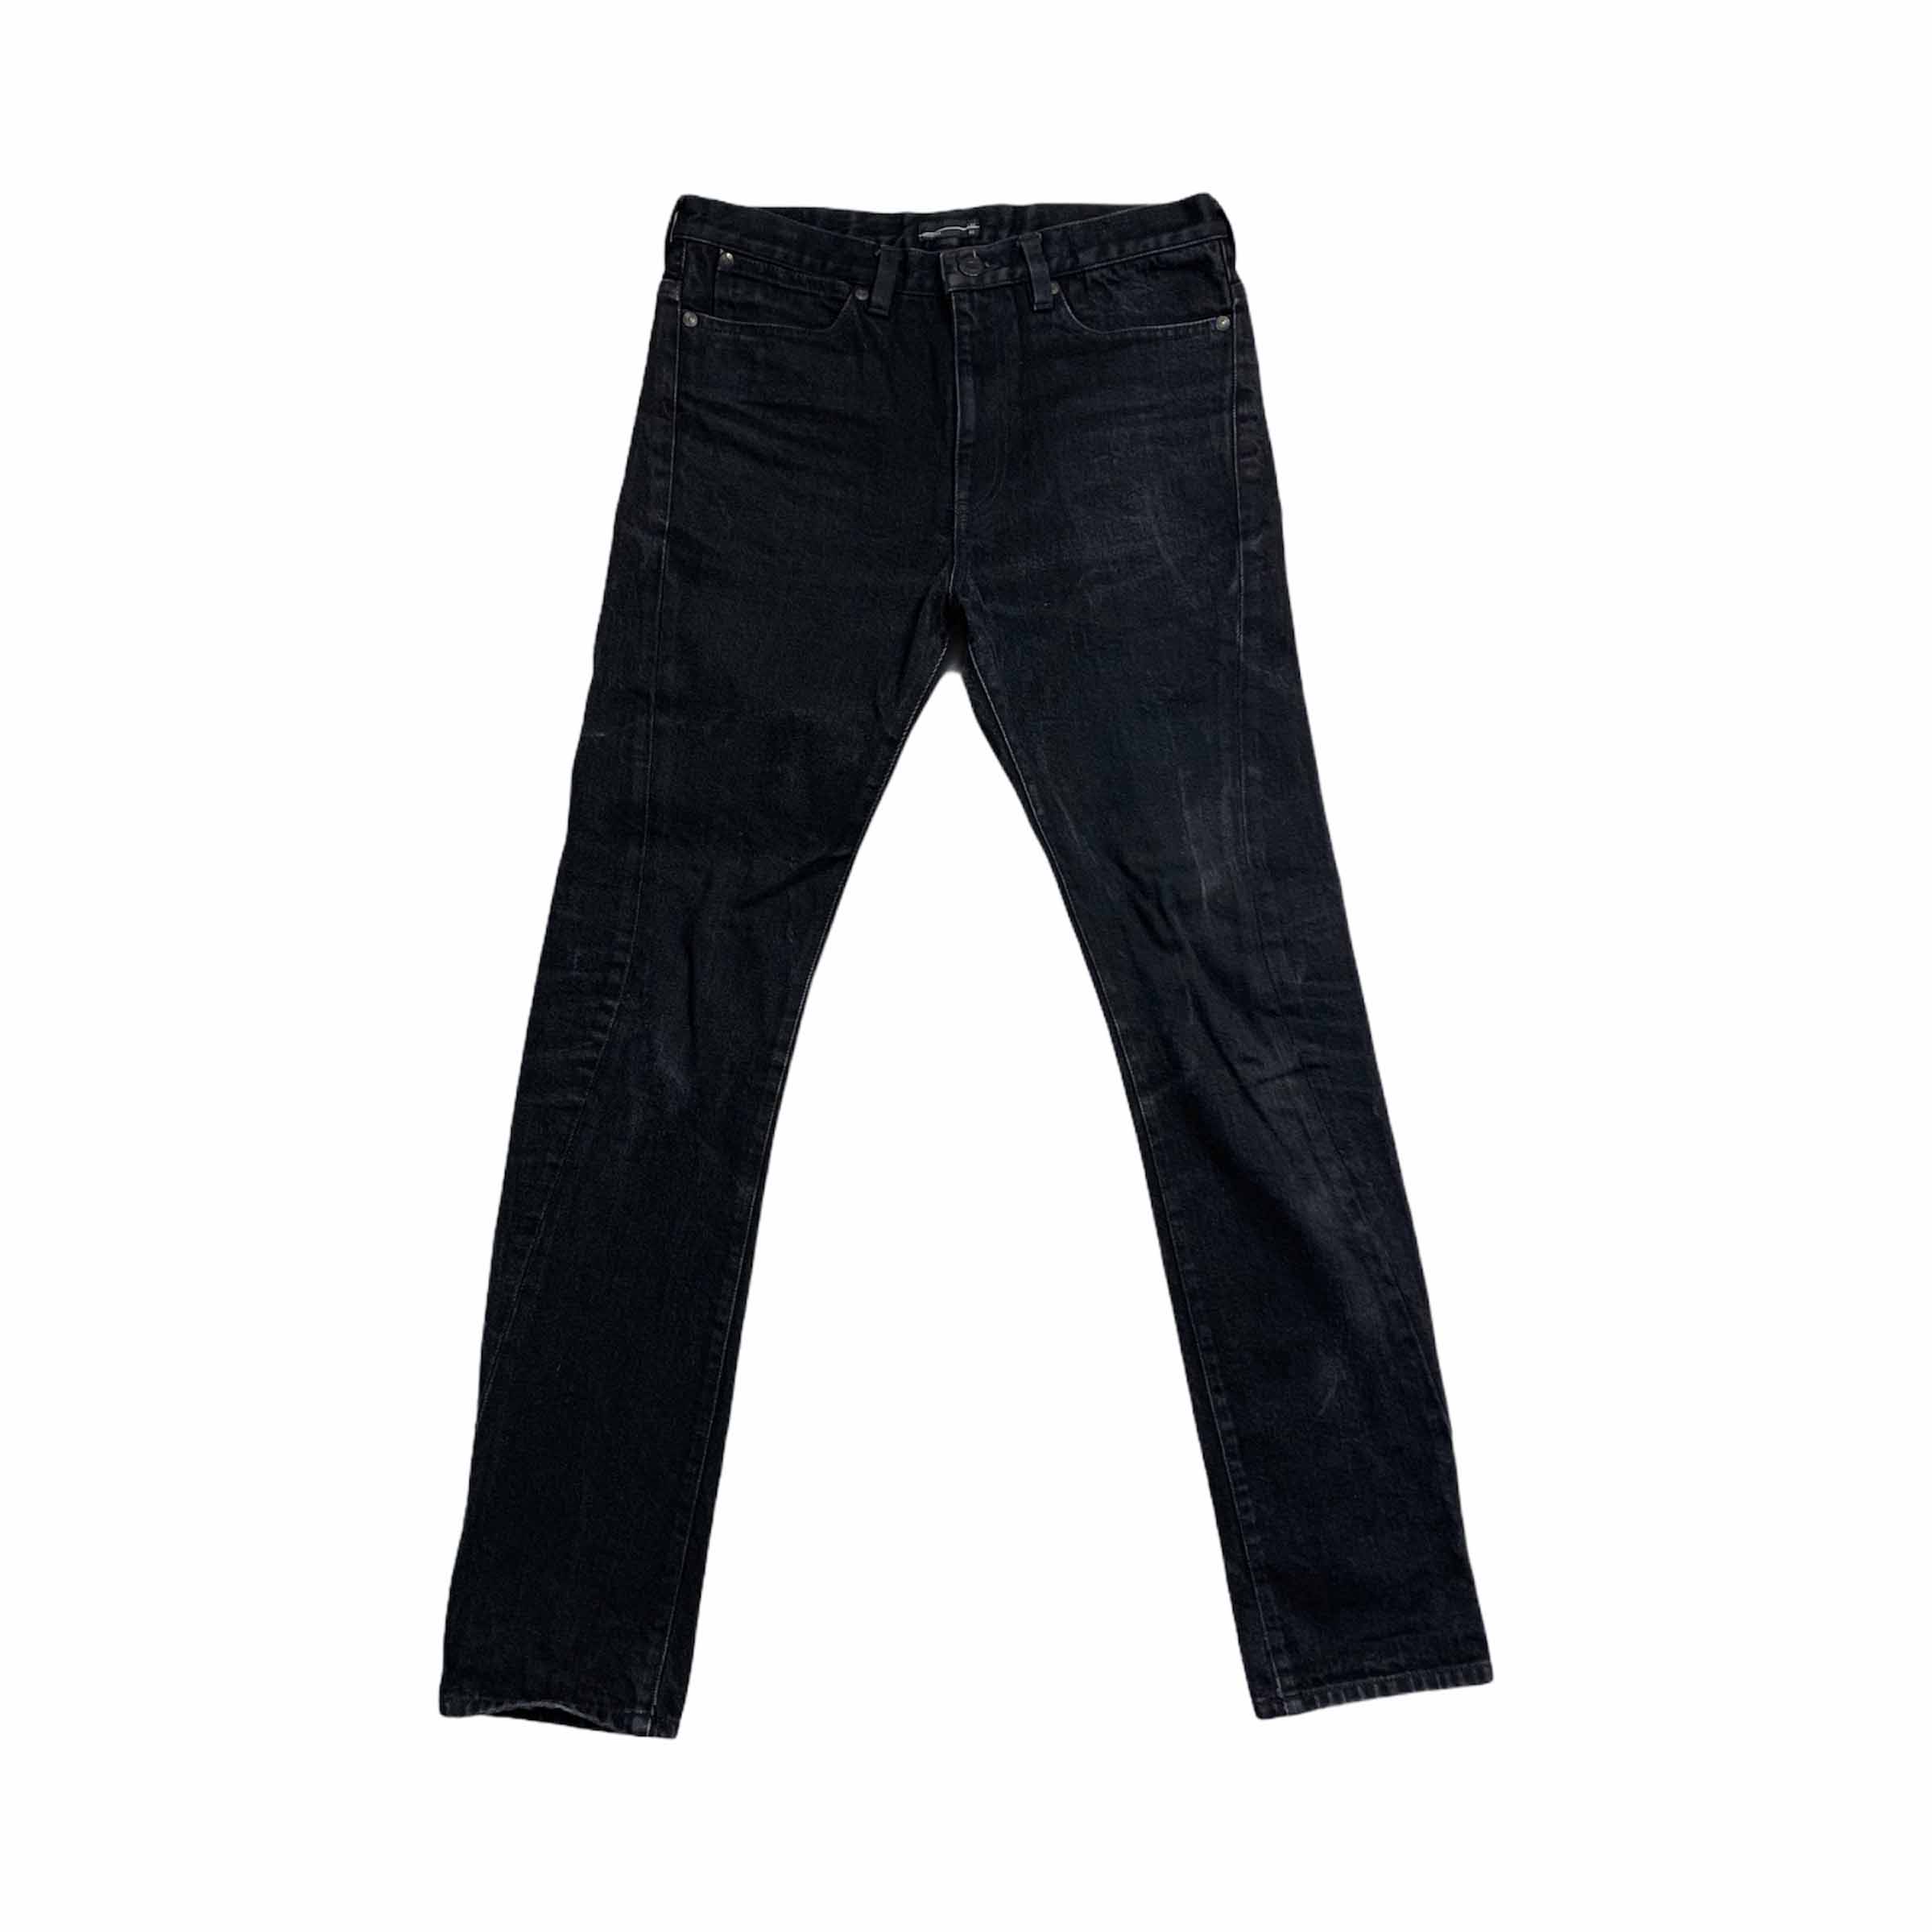 [Lad Musician] Black Jeans - Size 44